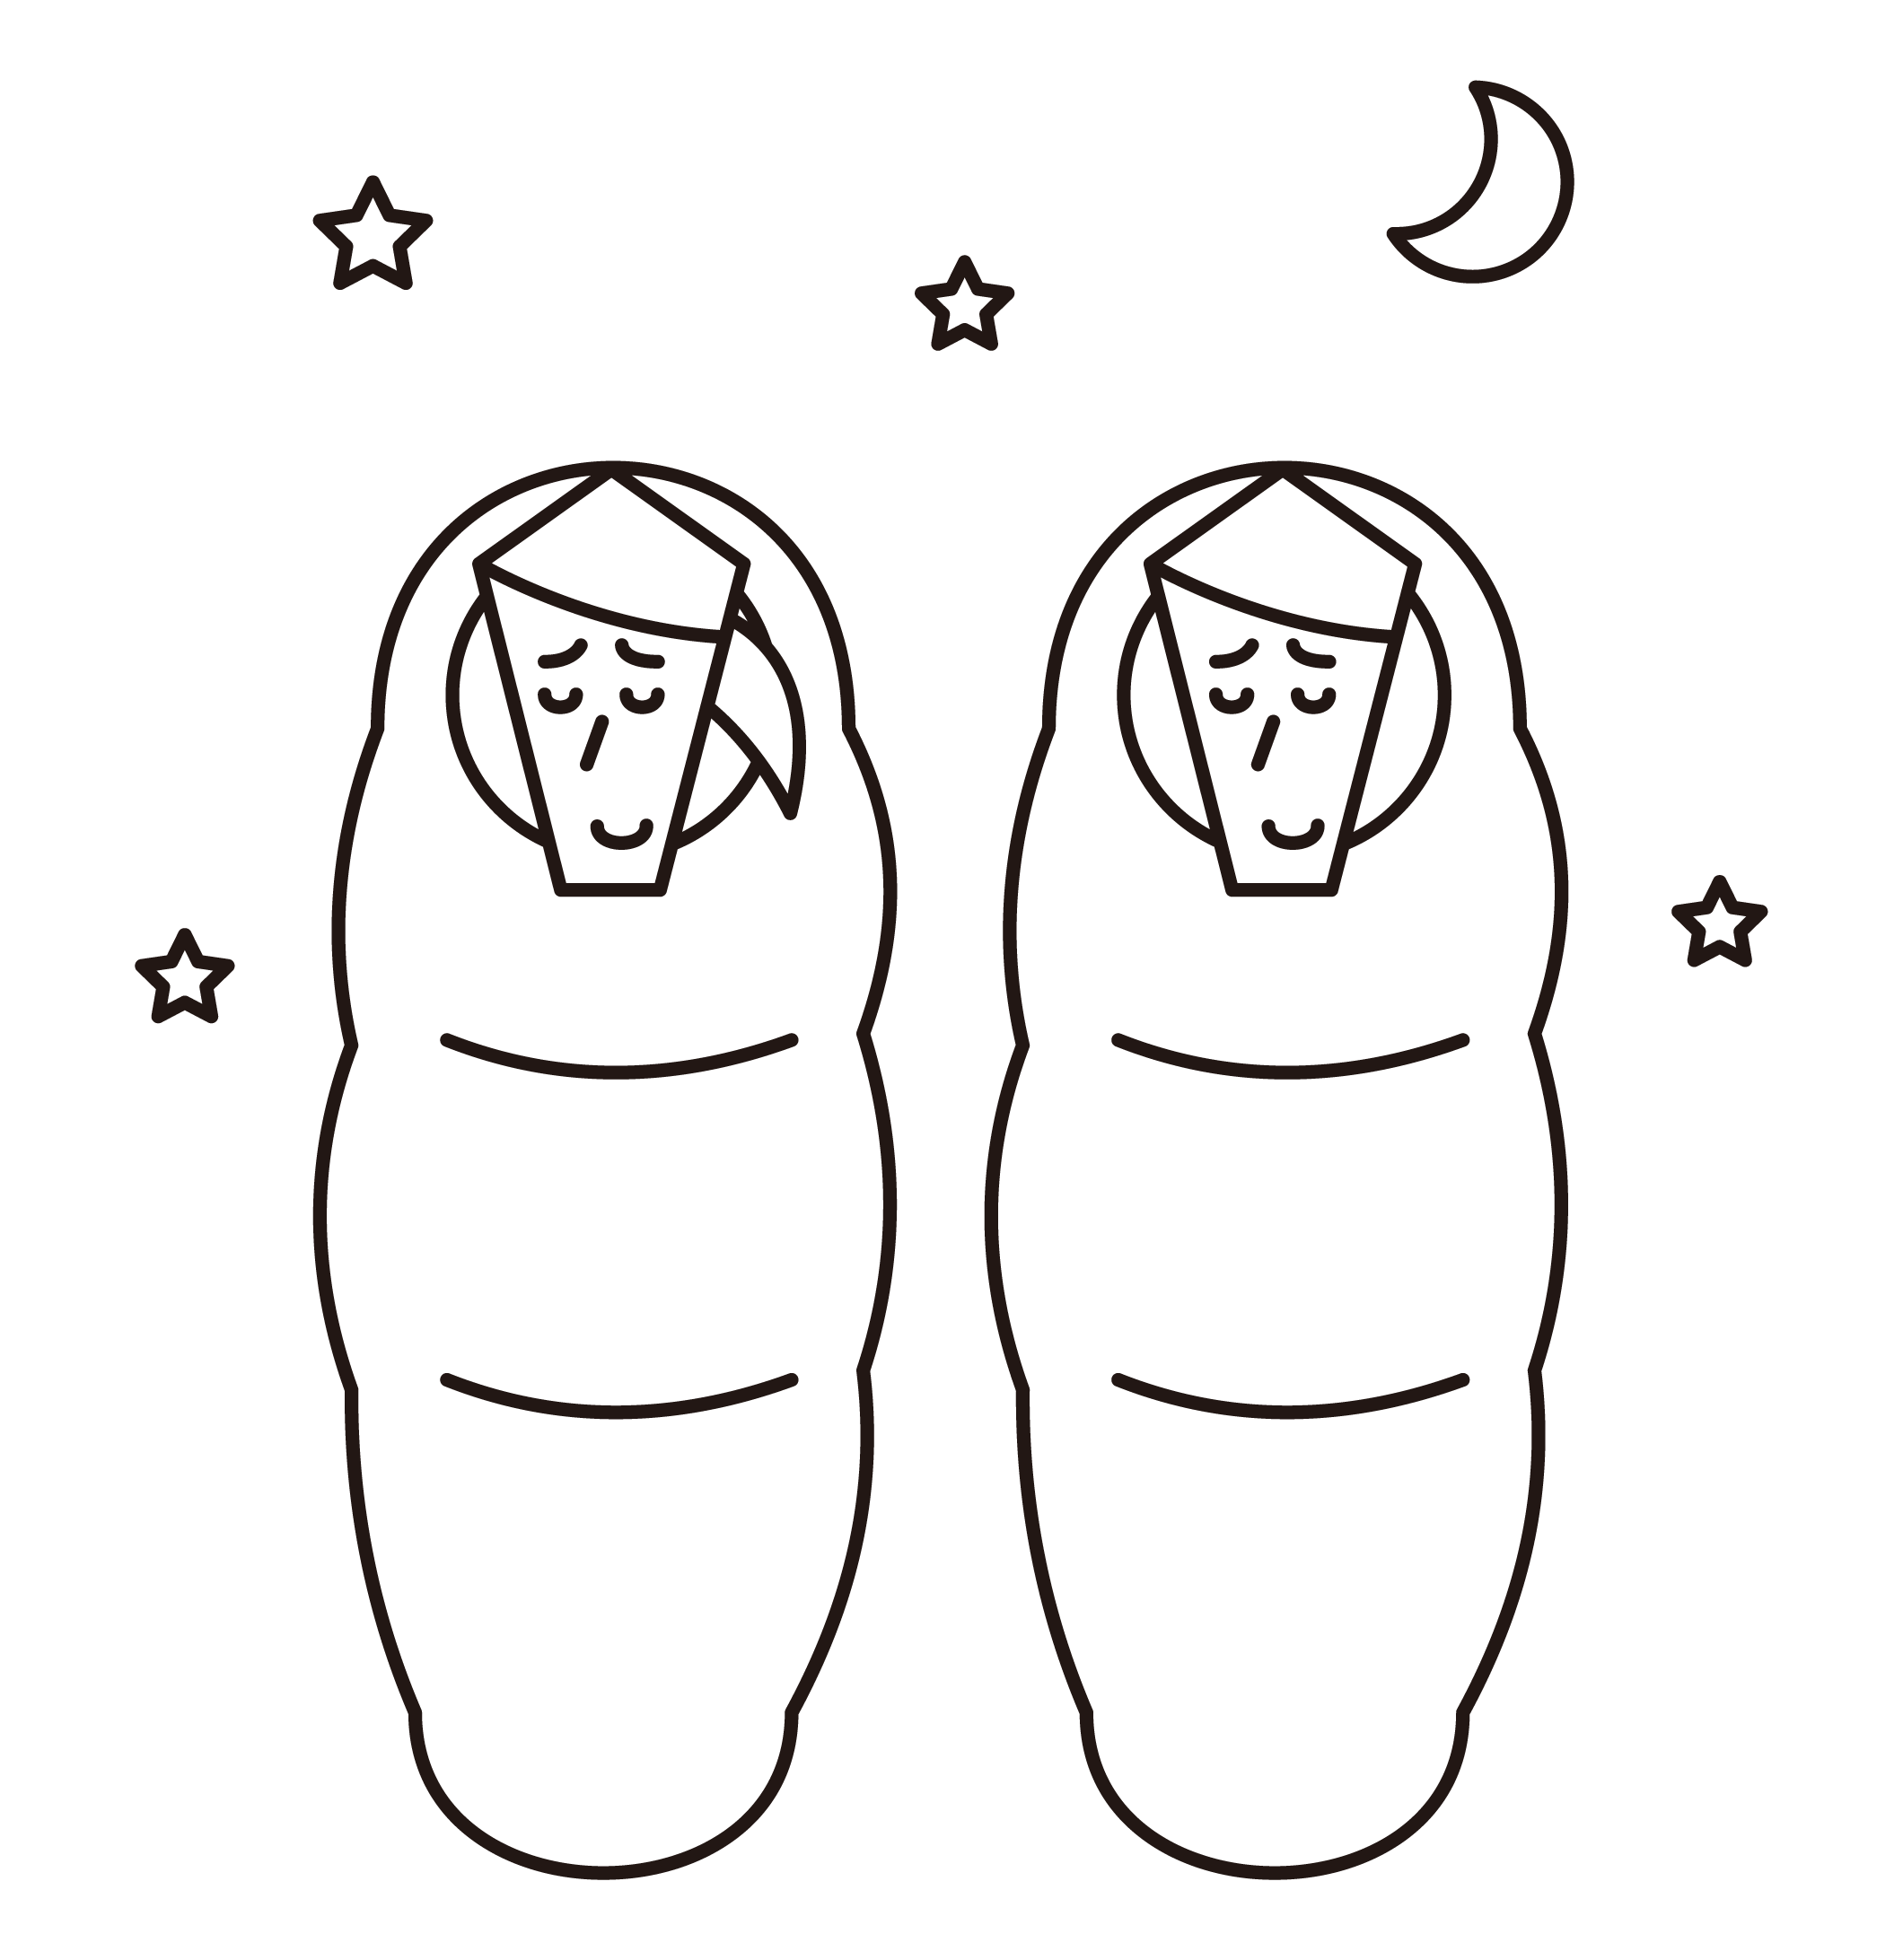 Illustration of people sleeping in sleeping bags